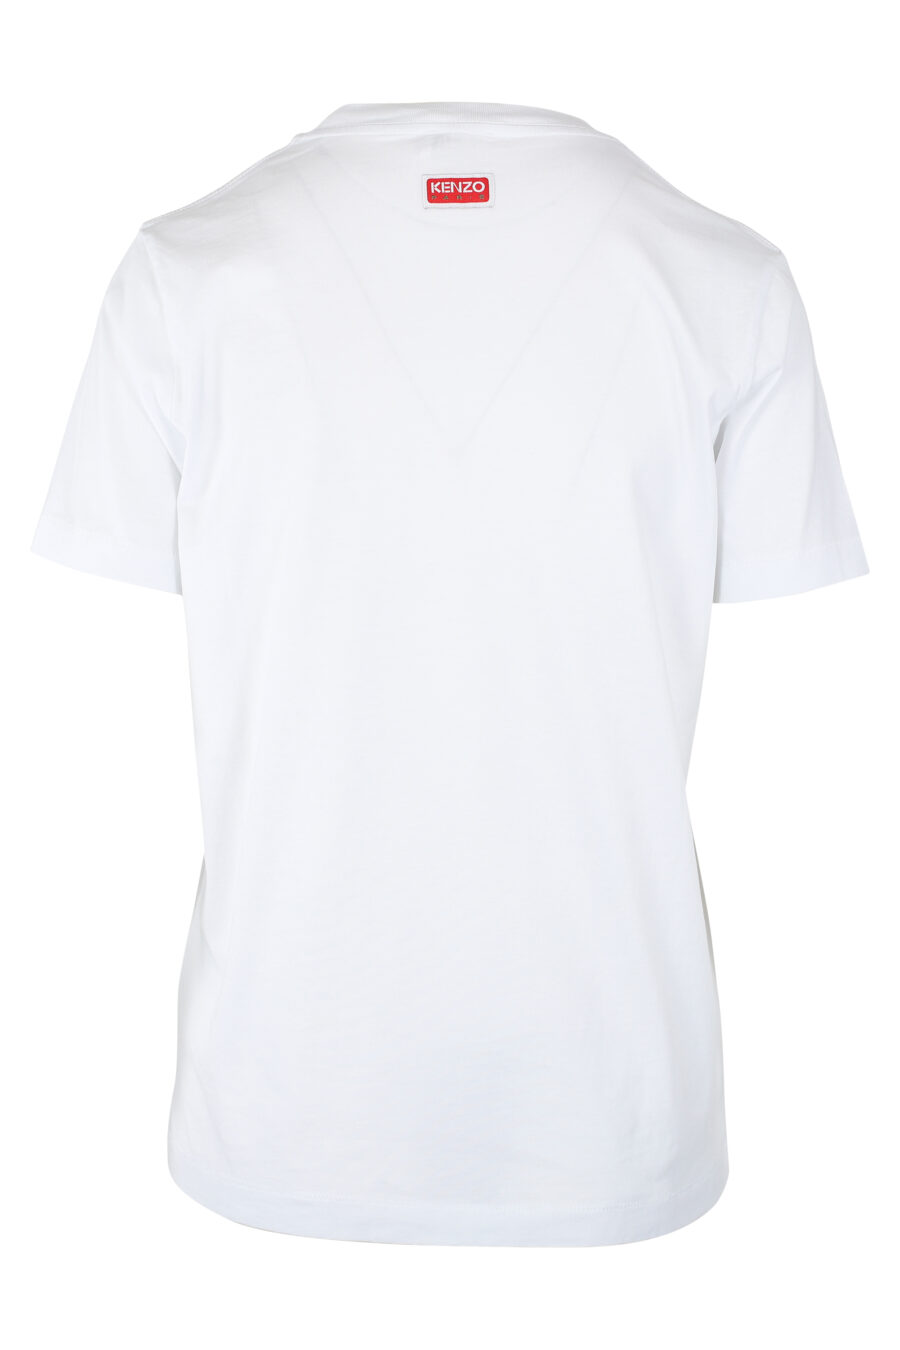 White T-shirt with orange flower maxilogo - IMG 9529